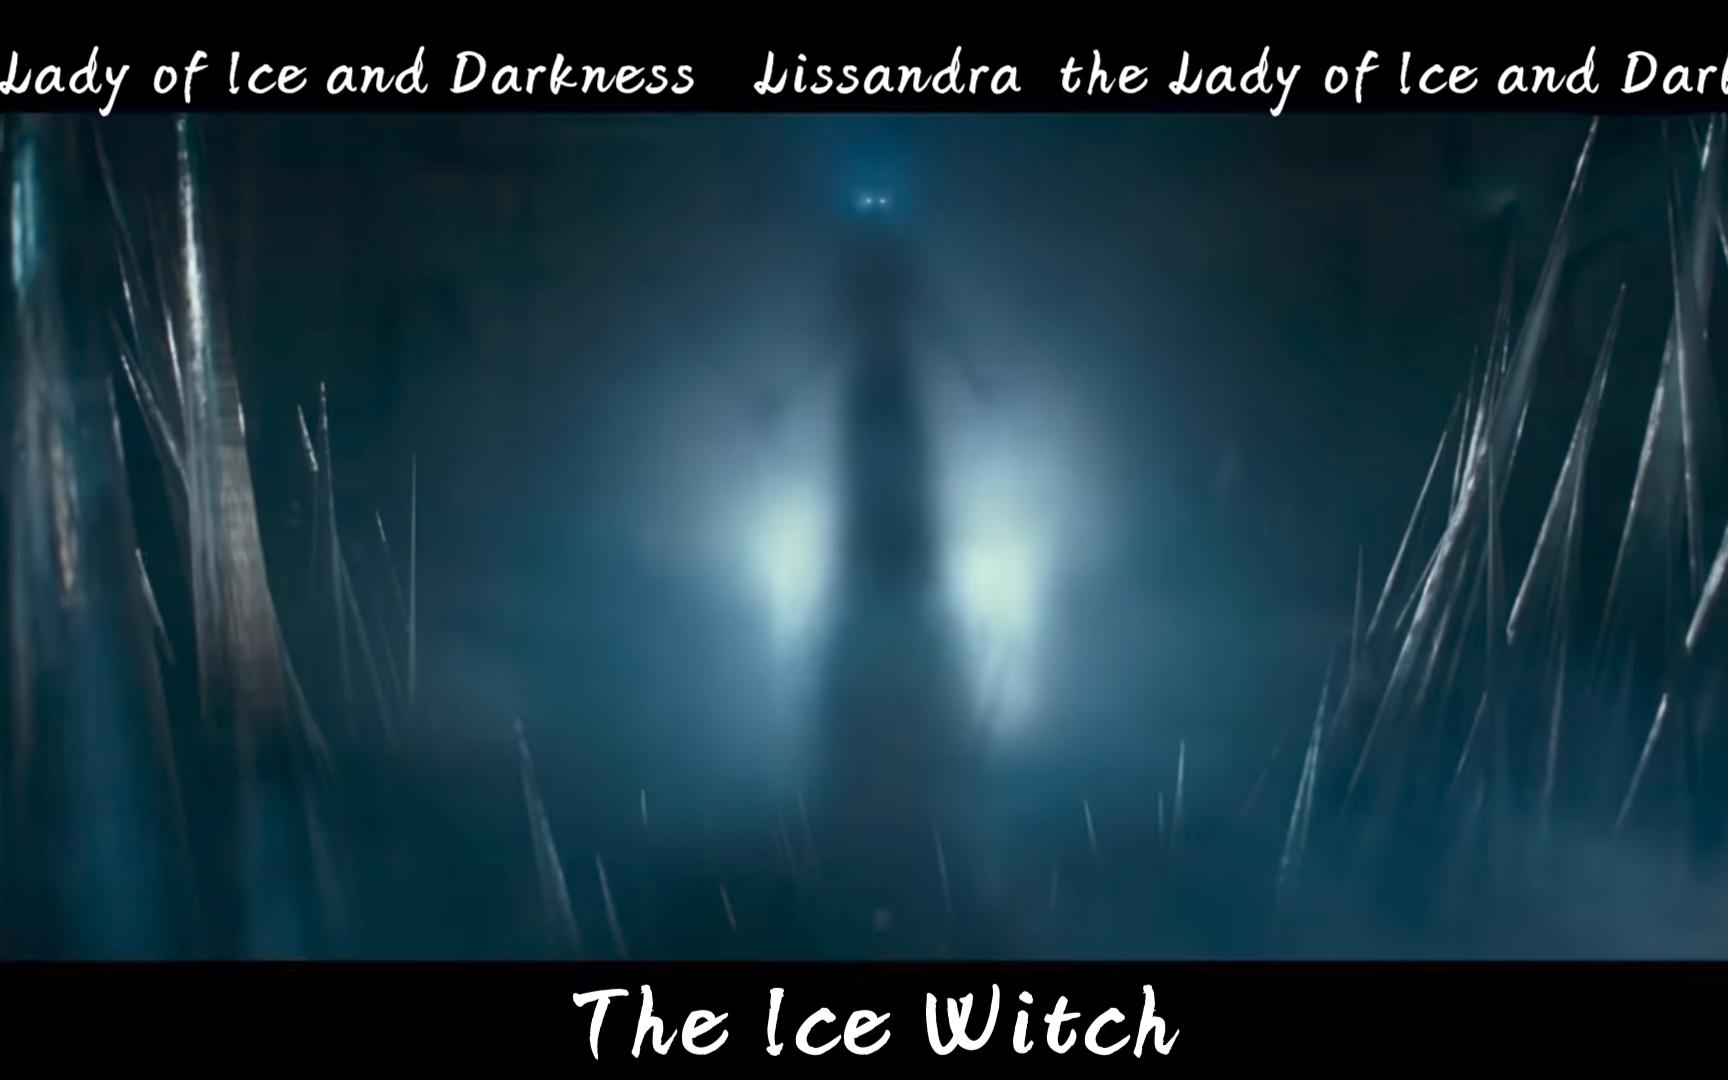 ”冰霜女巫丽桑卓大电影【The Ice Witch】即将上映“